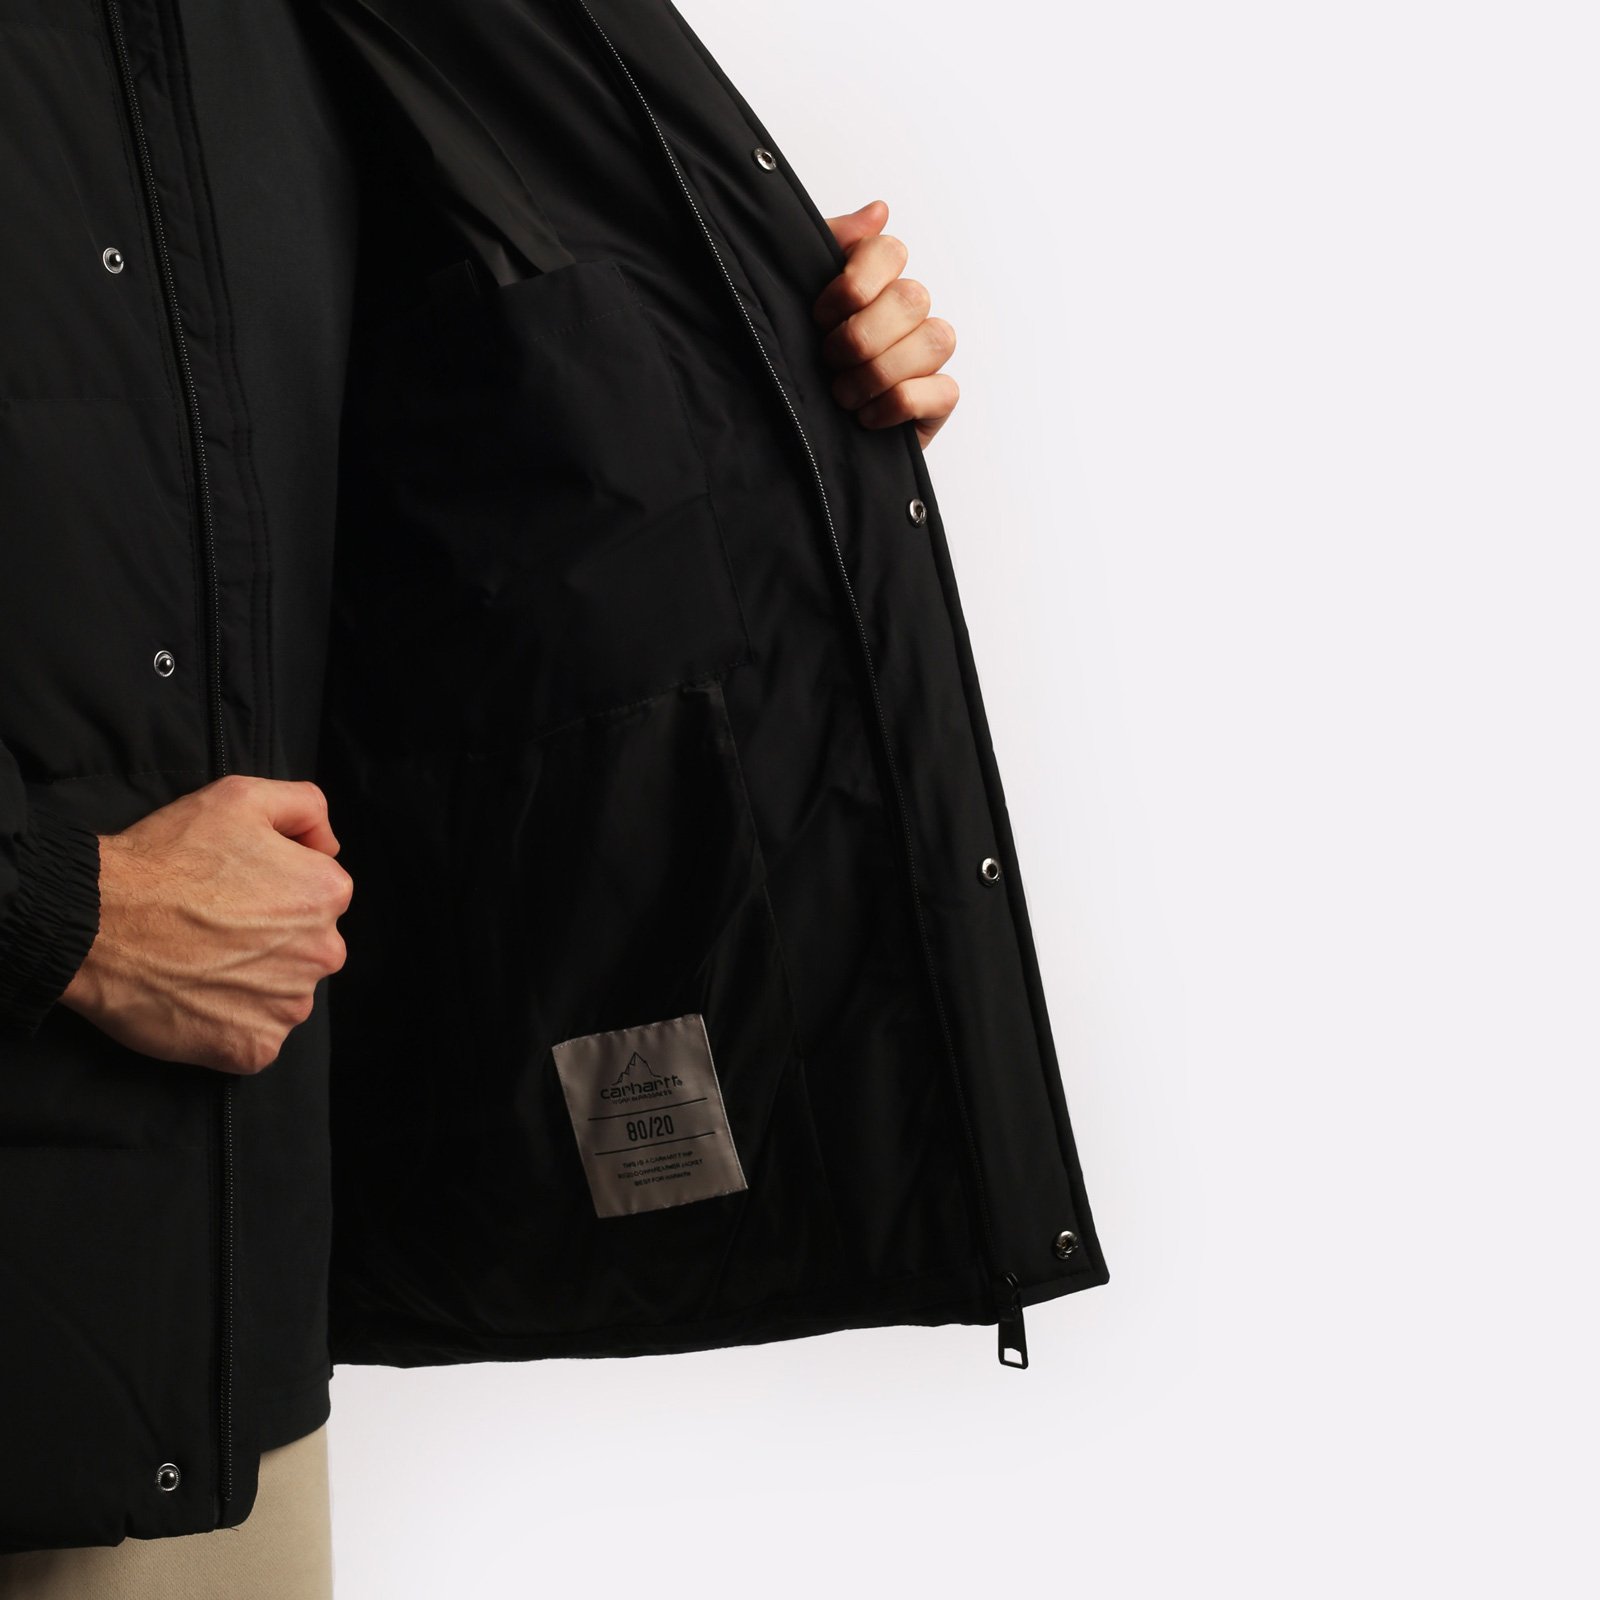 мужская куртка Carhartt WIP Danville Jacket  (I029450-black/wht)  - цена, описание, фото 5